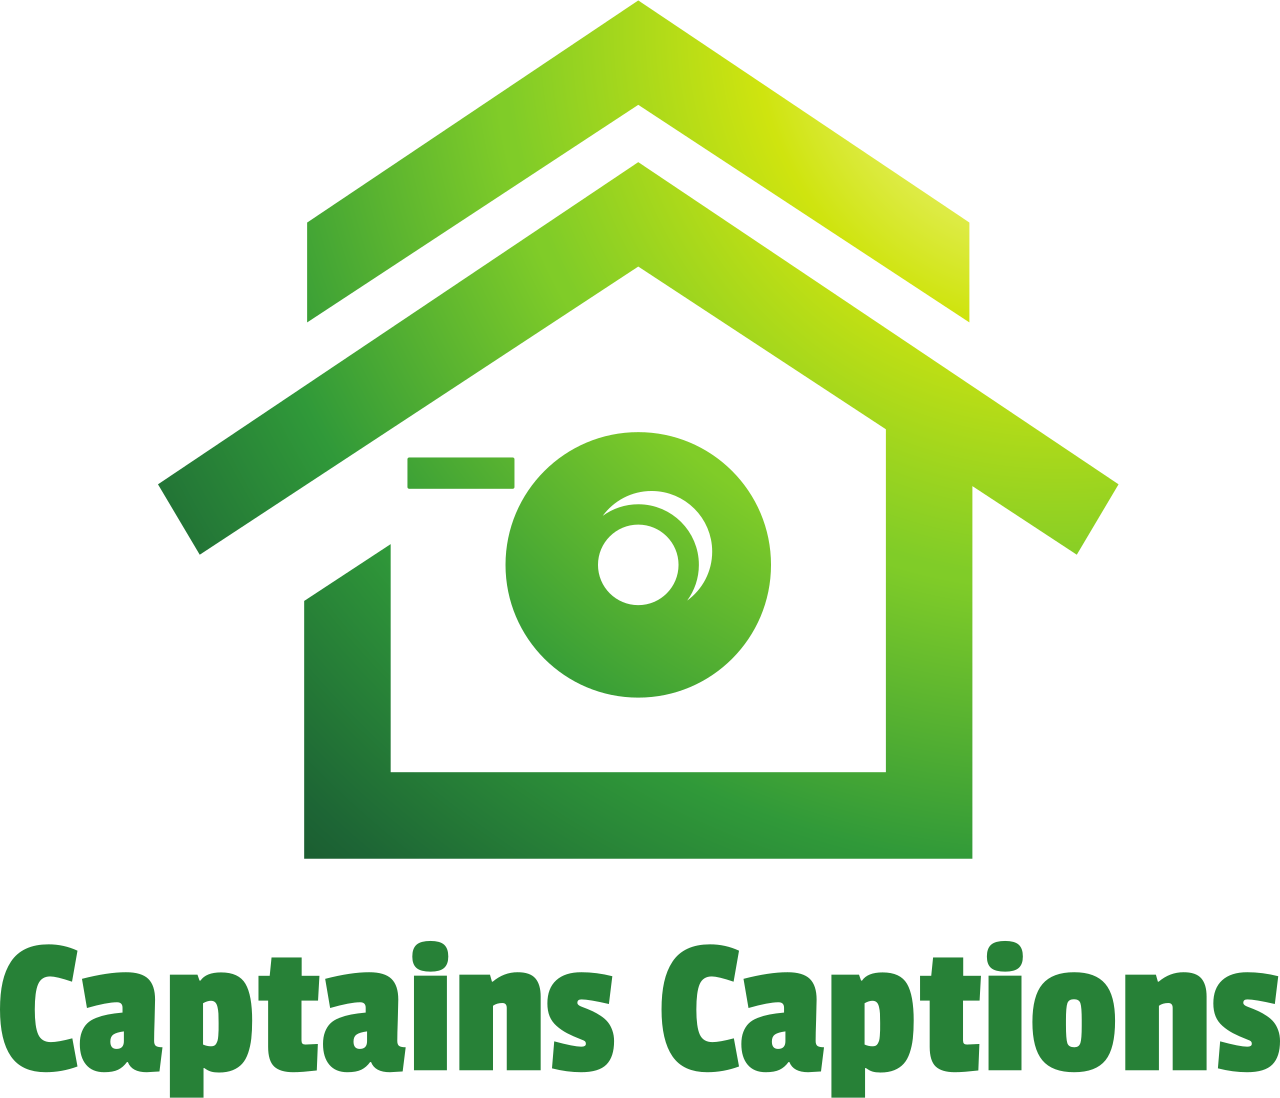 Captains Captions's logo